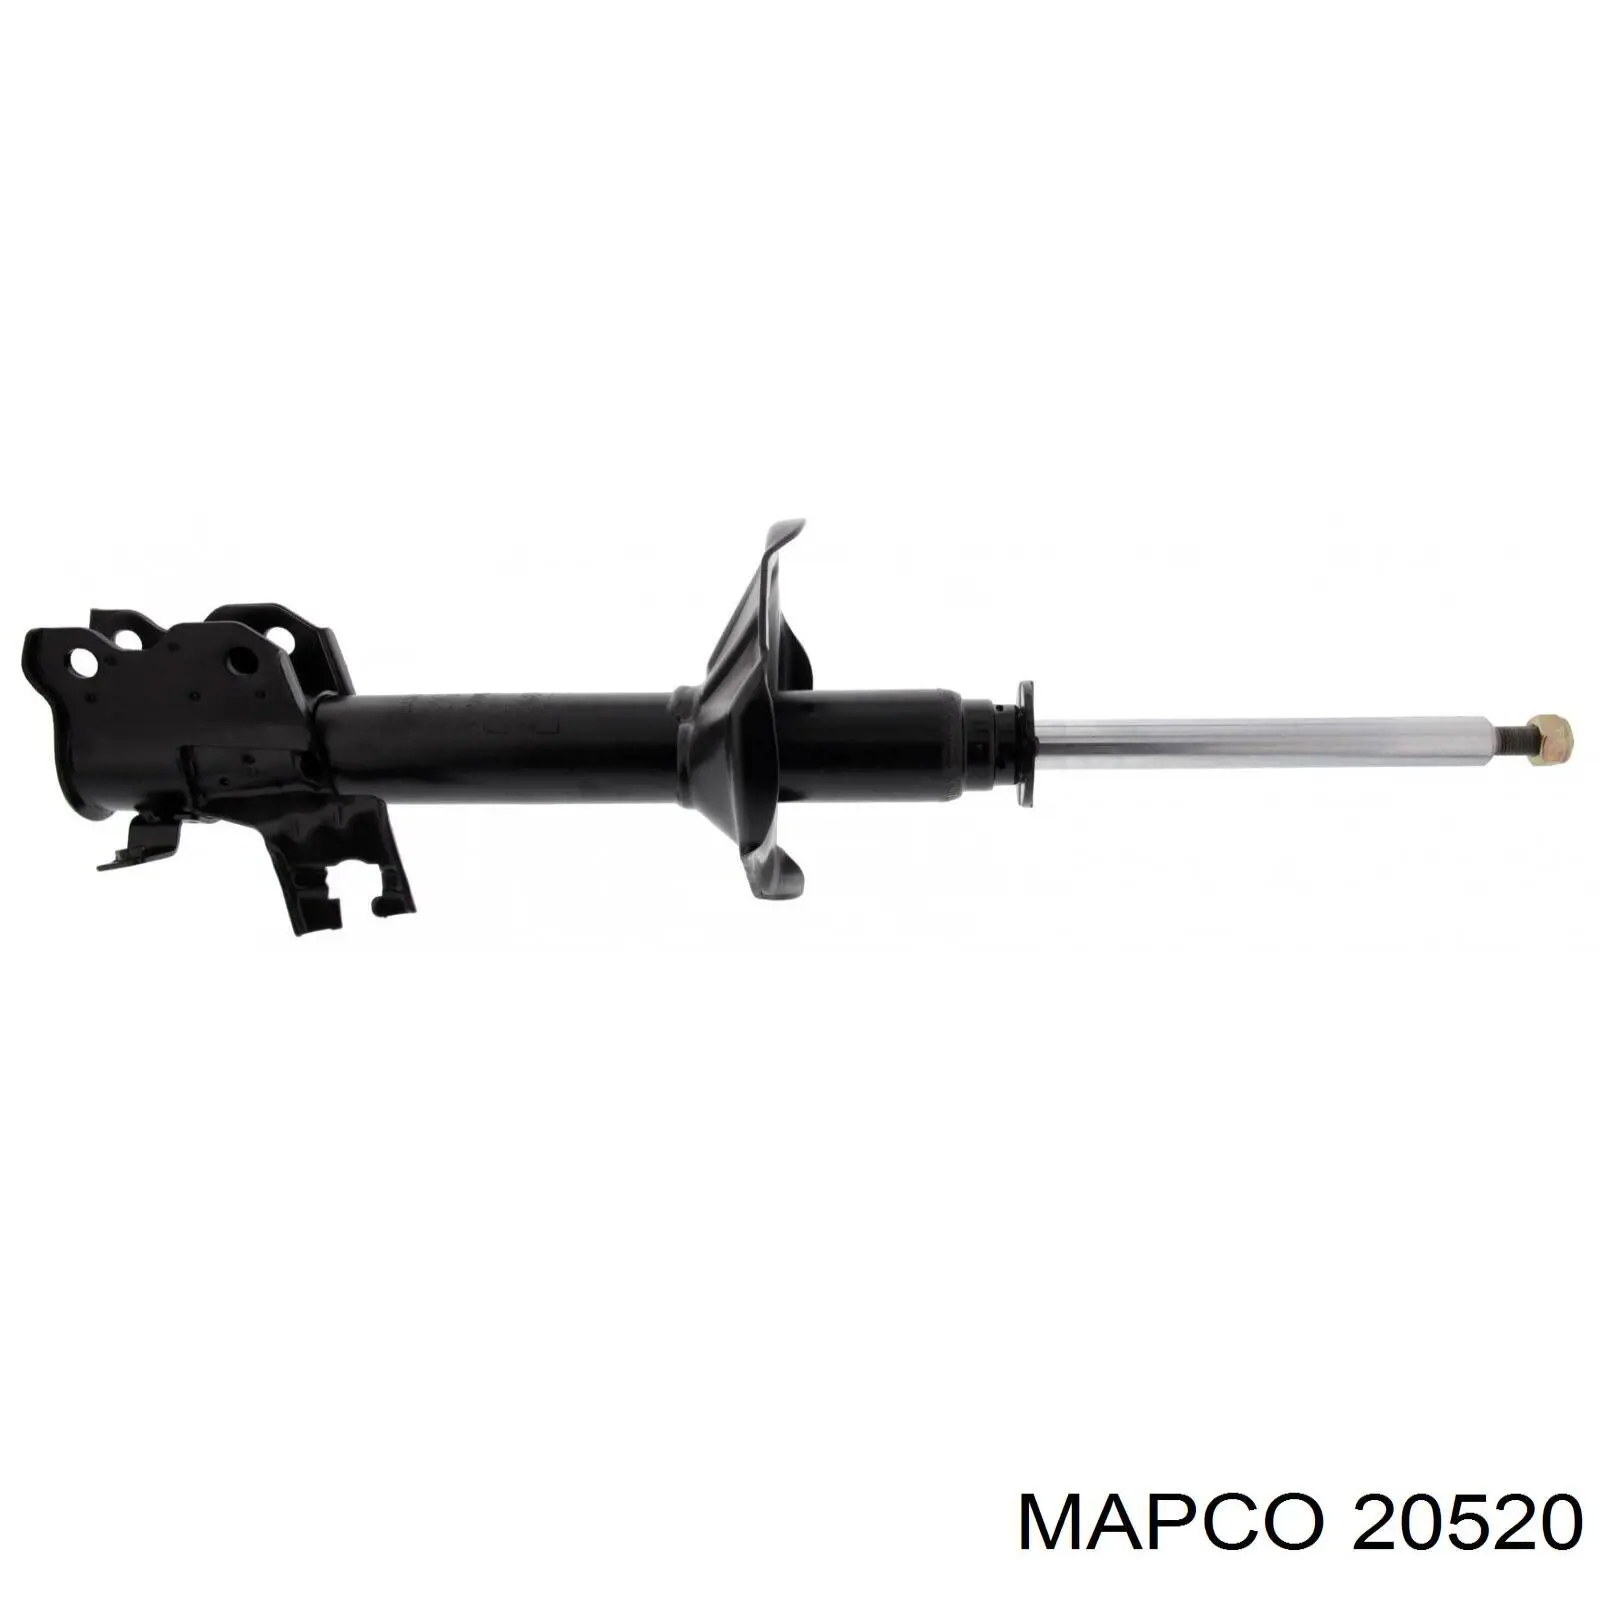 20520 Mapco амортизатор передний правый